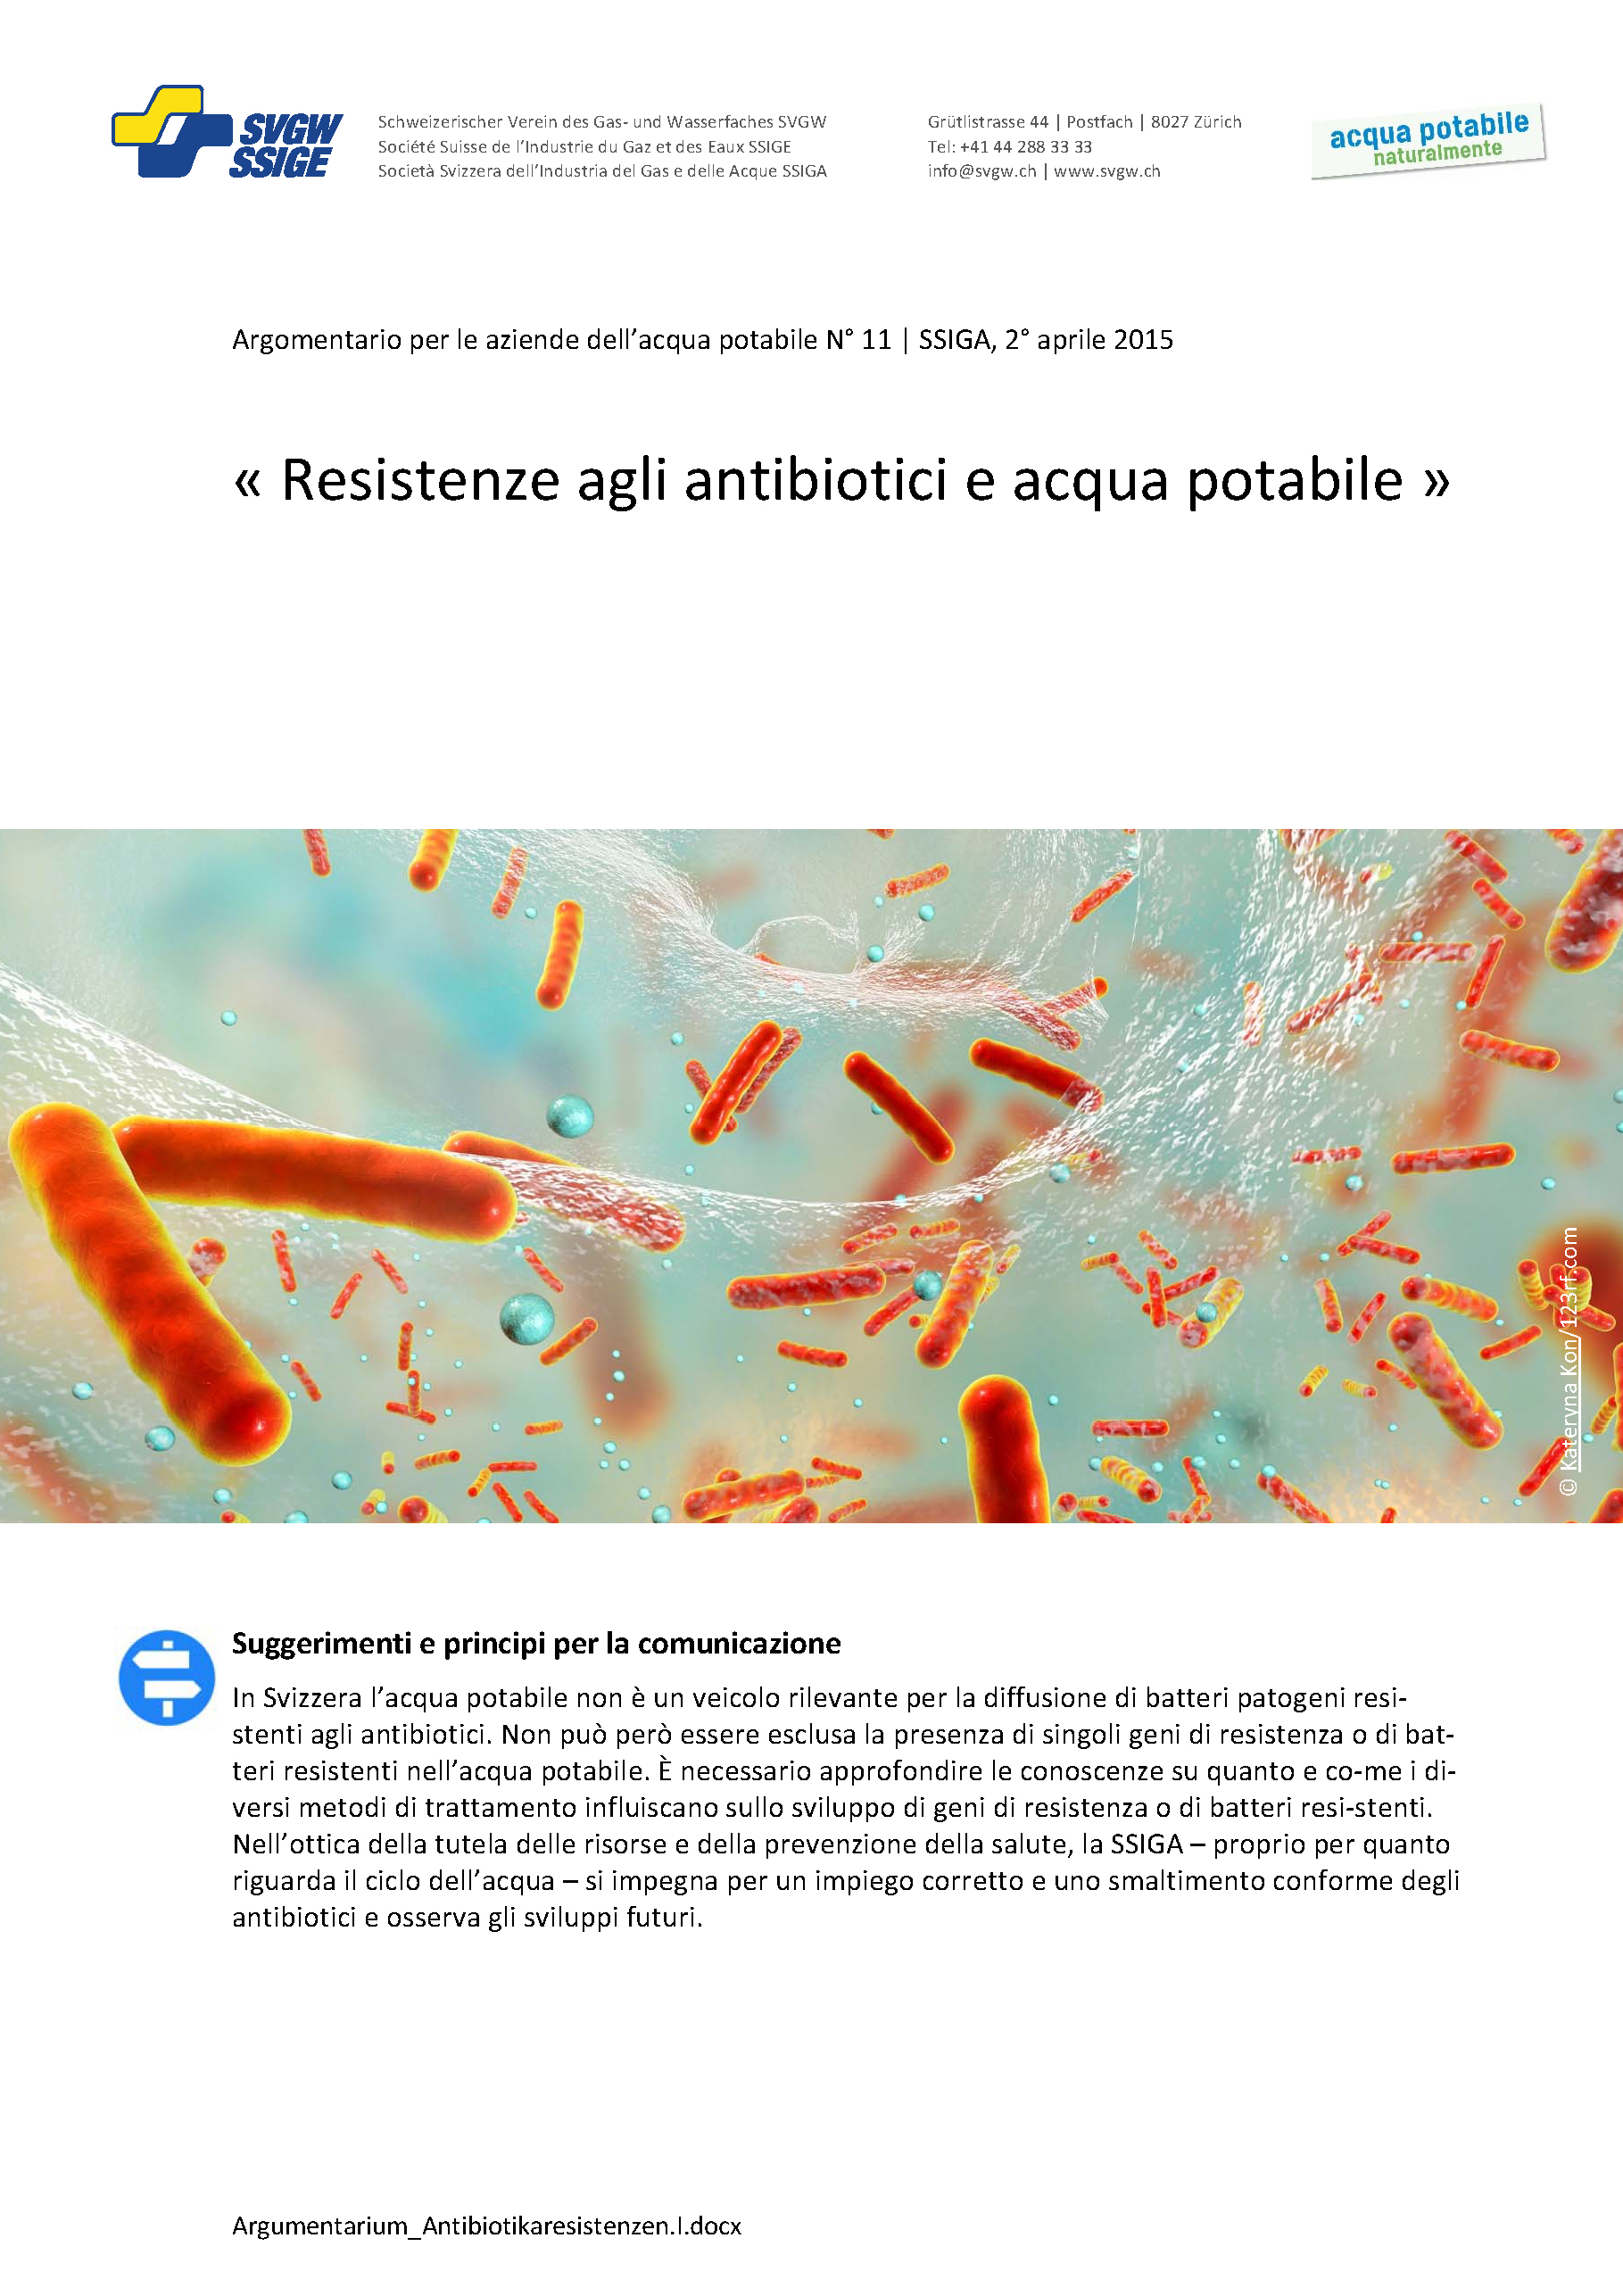 Argomentazione: «Resistente agli antibiotici e acqua potabile»